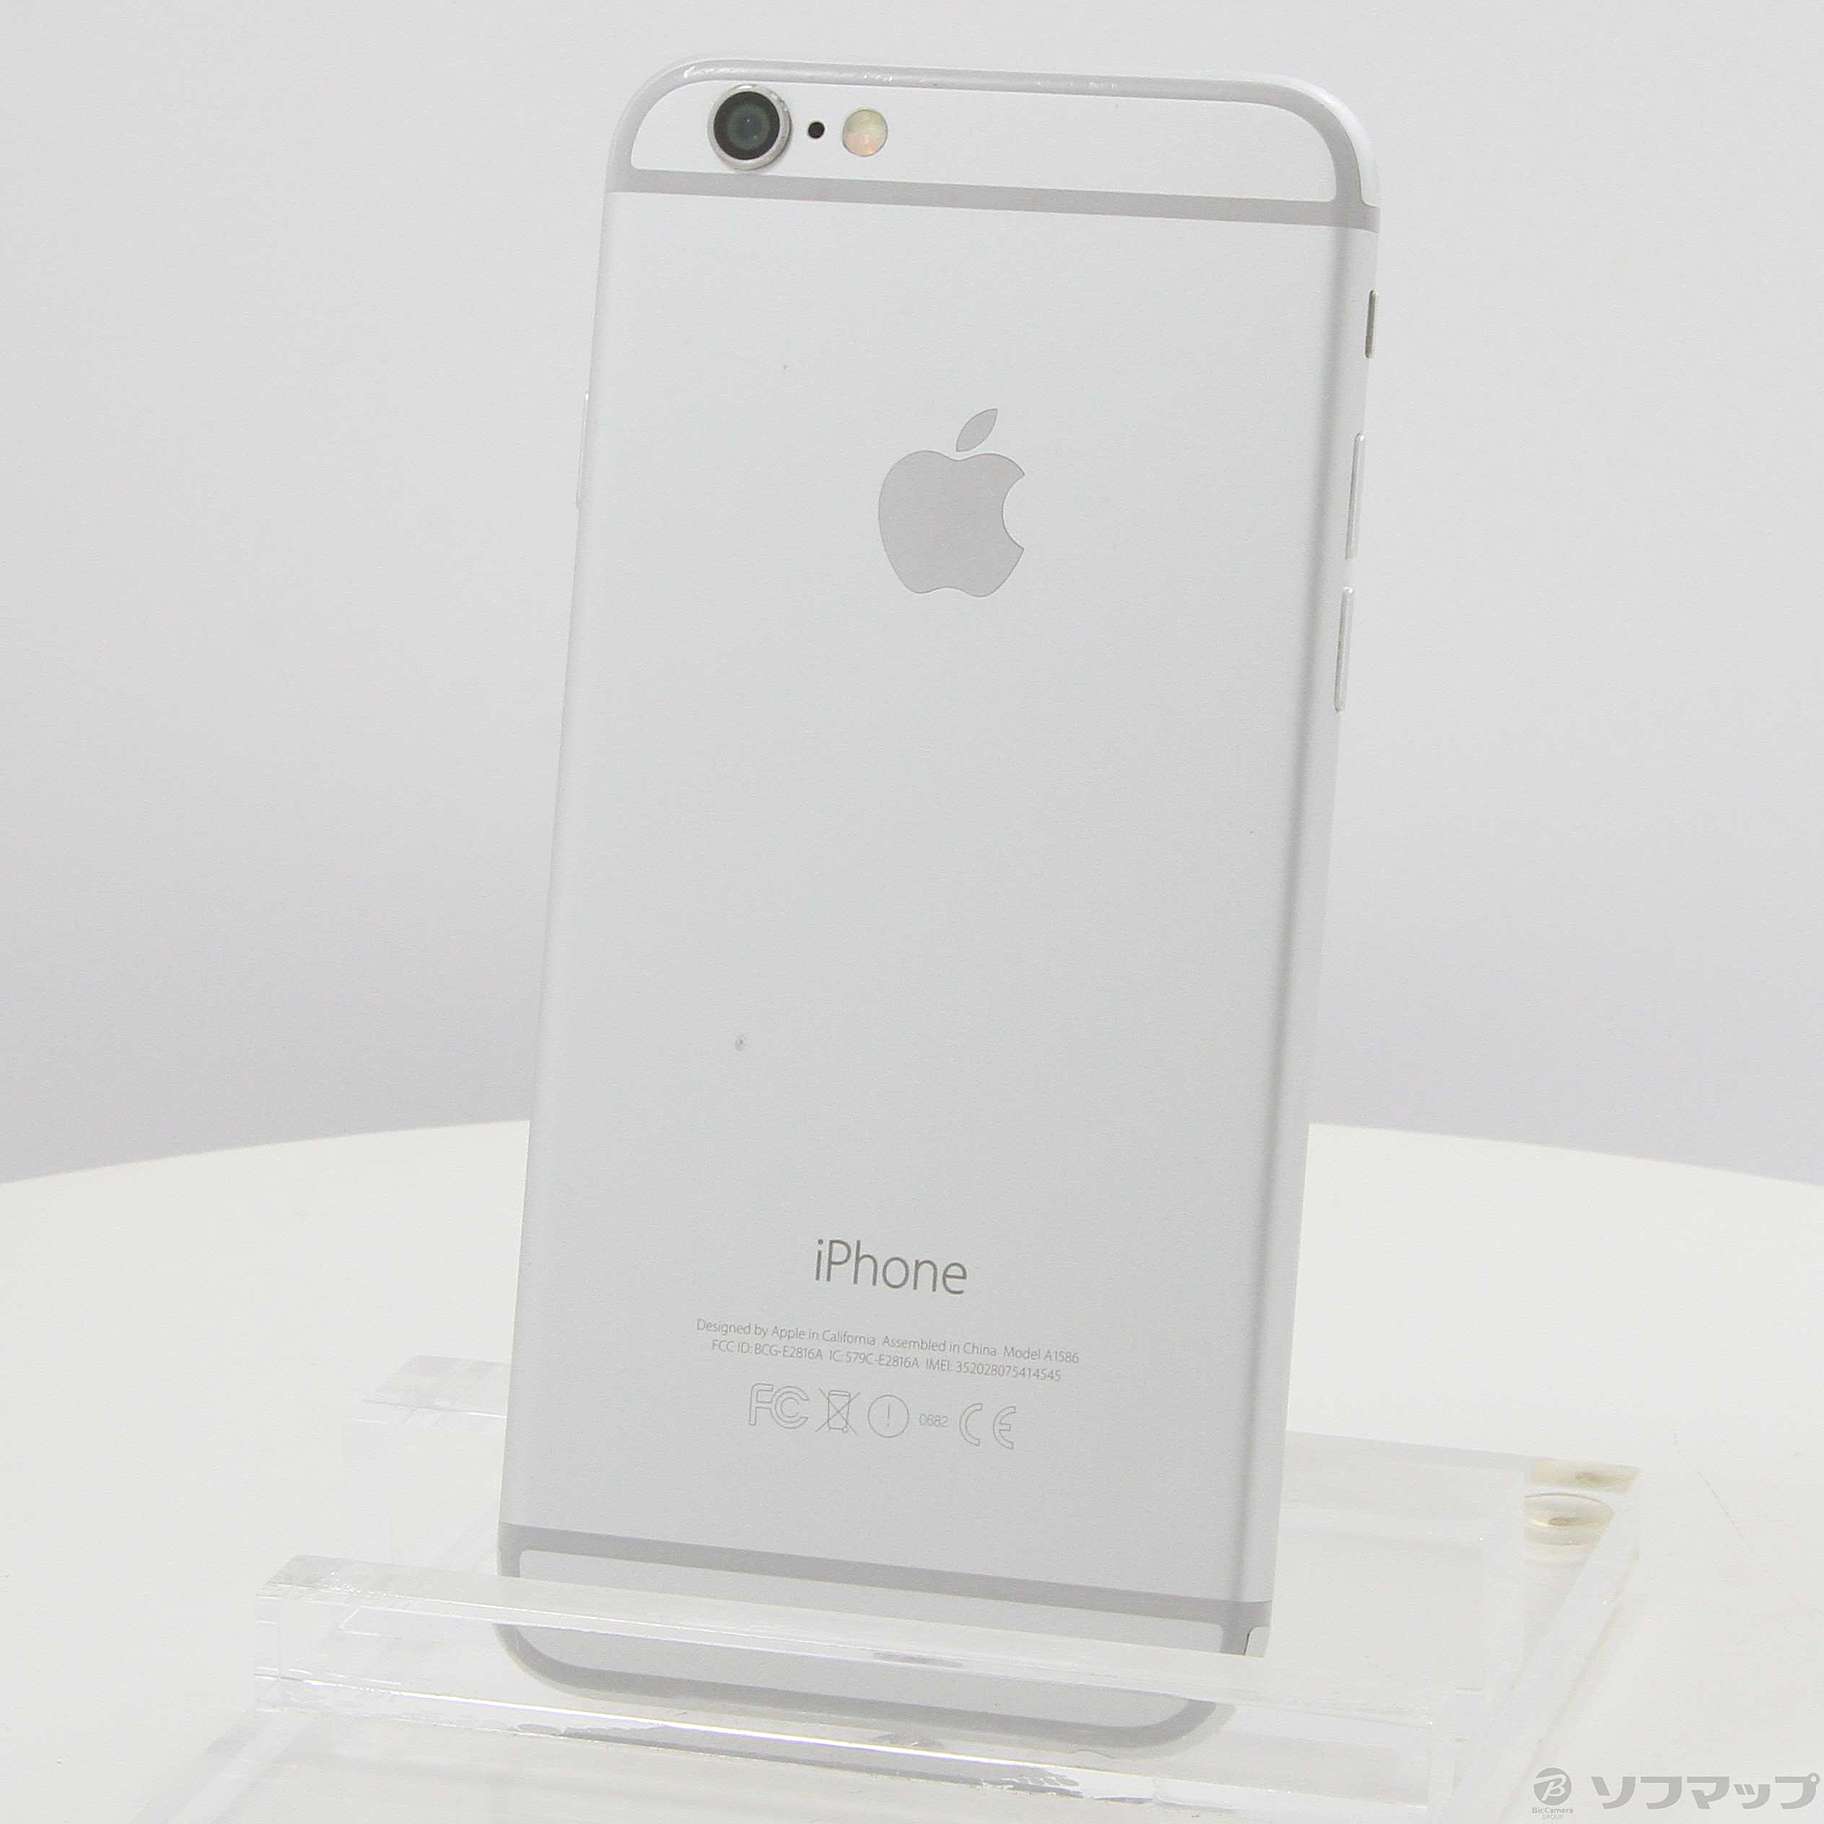 スマートフォン/携帯電話iPhone 6 16GB silver docomo